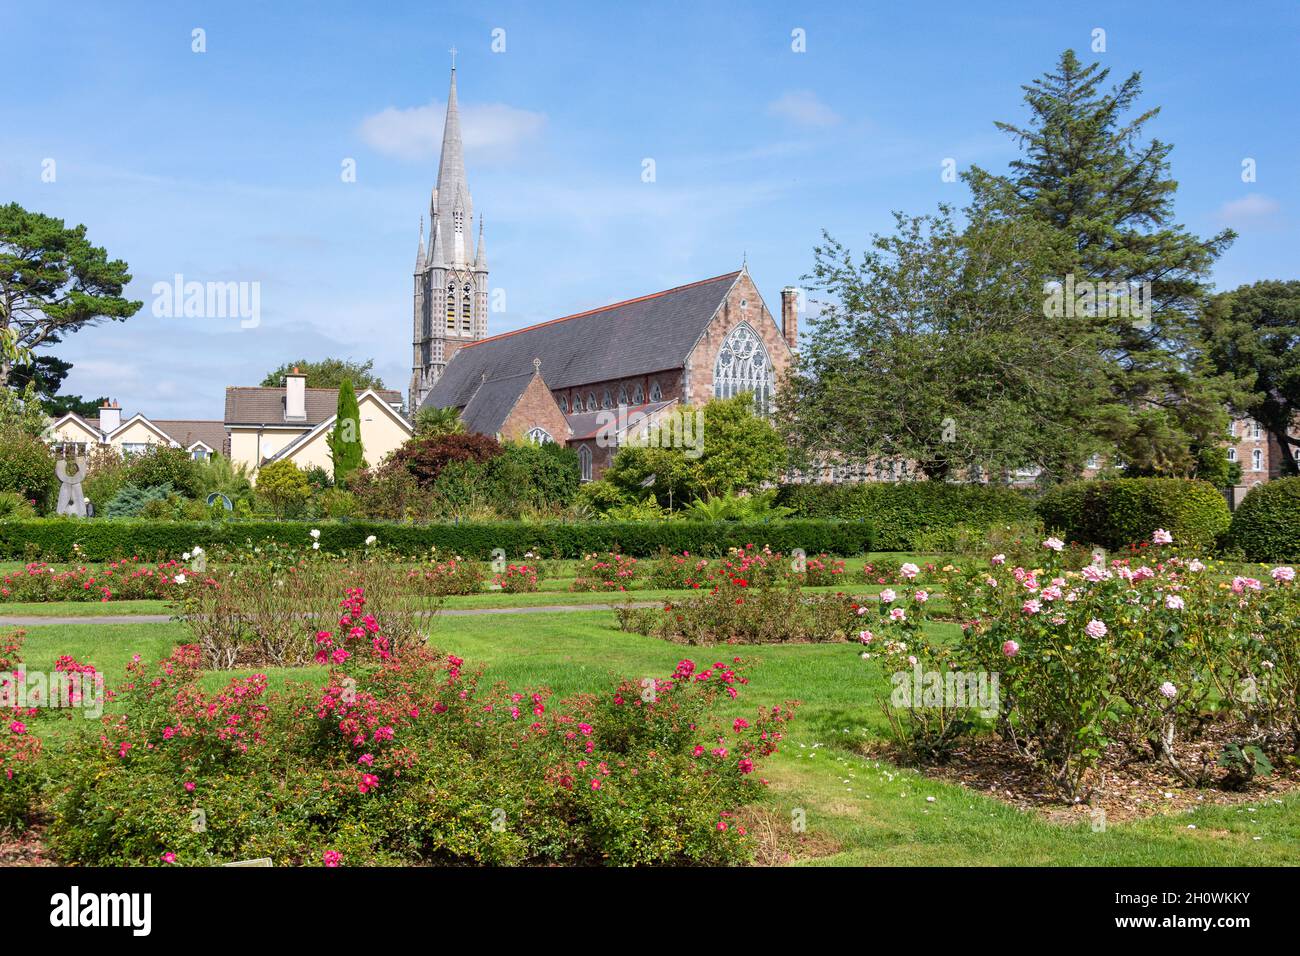 Église catholique St John's du Rose Garden, Tralee Town Park, Tralee (Tra Li), comté de Kerry, République d'Irlande Banque D'Images